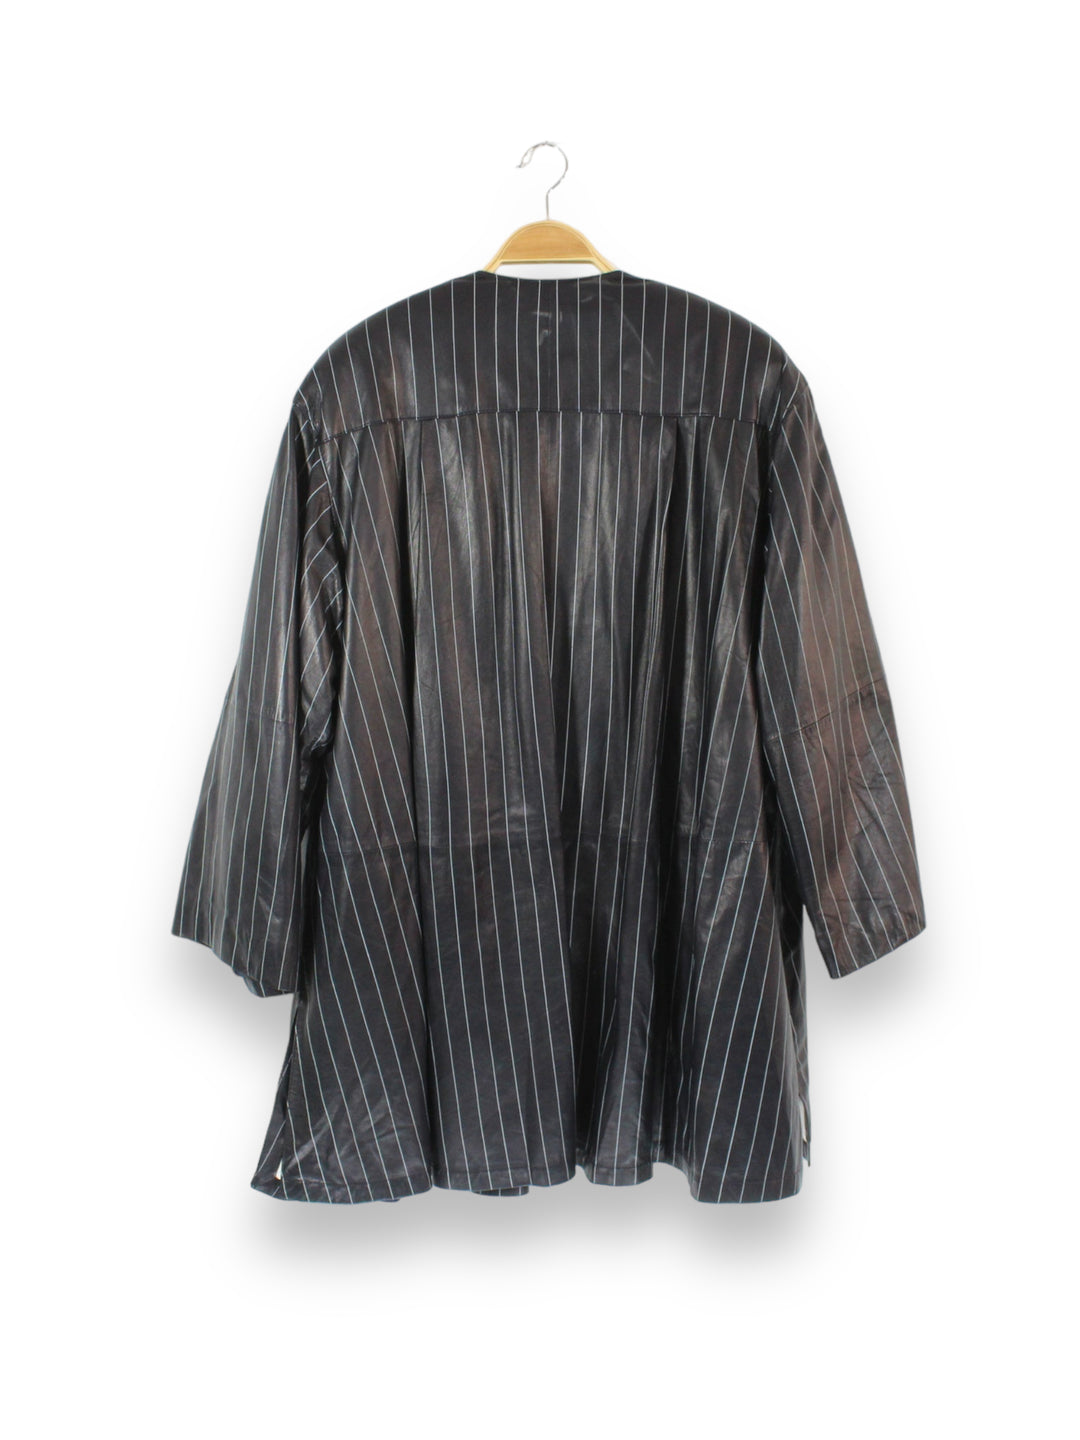 Vintage La Matta Leather Striped Coat w/ Shoulder Pads Women's Large